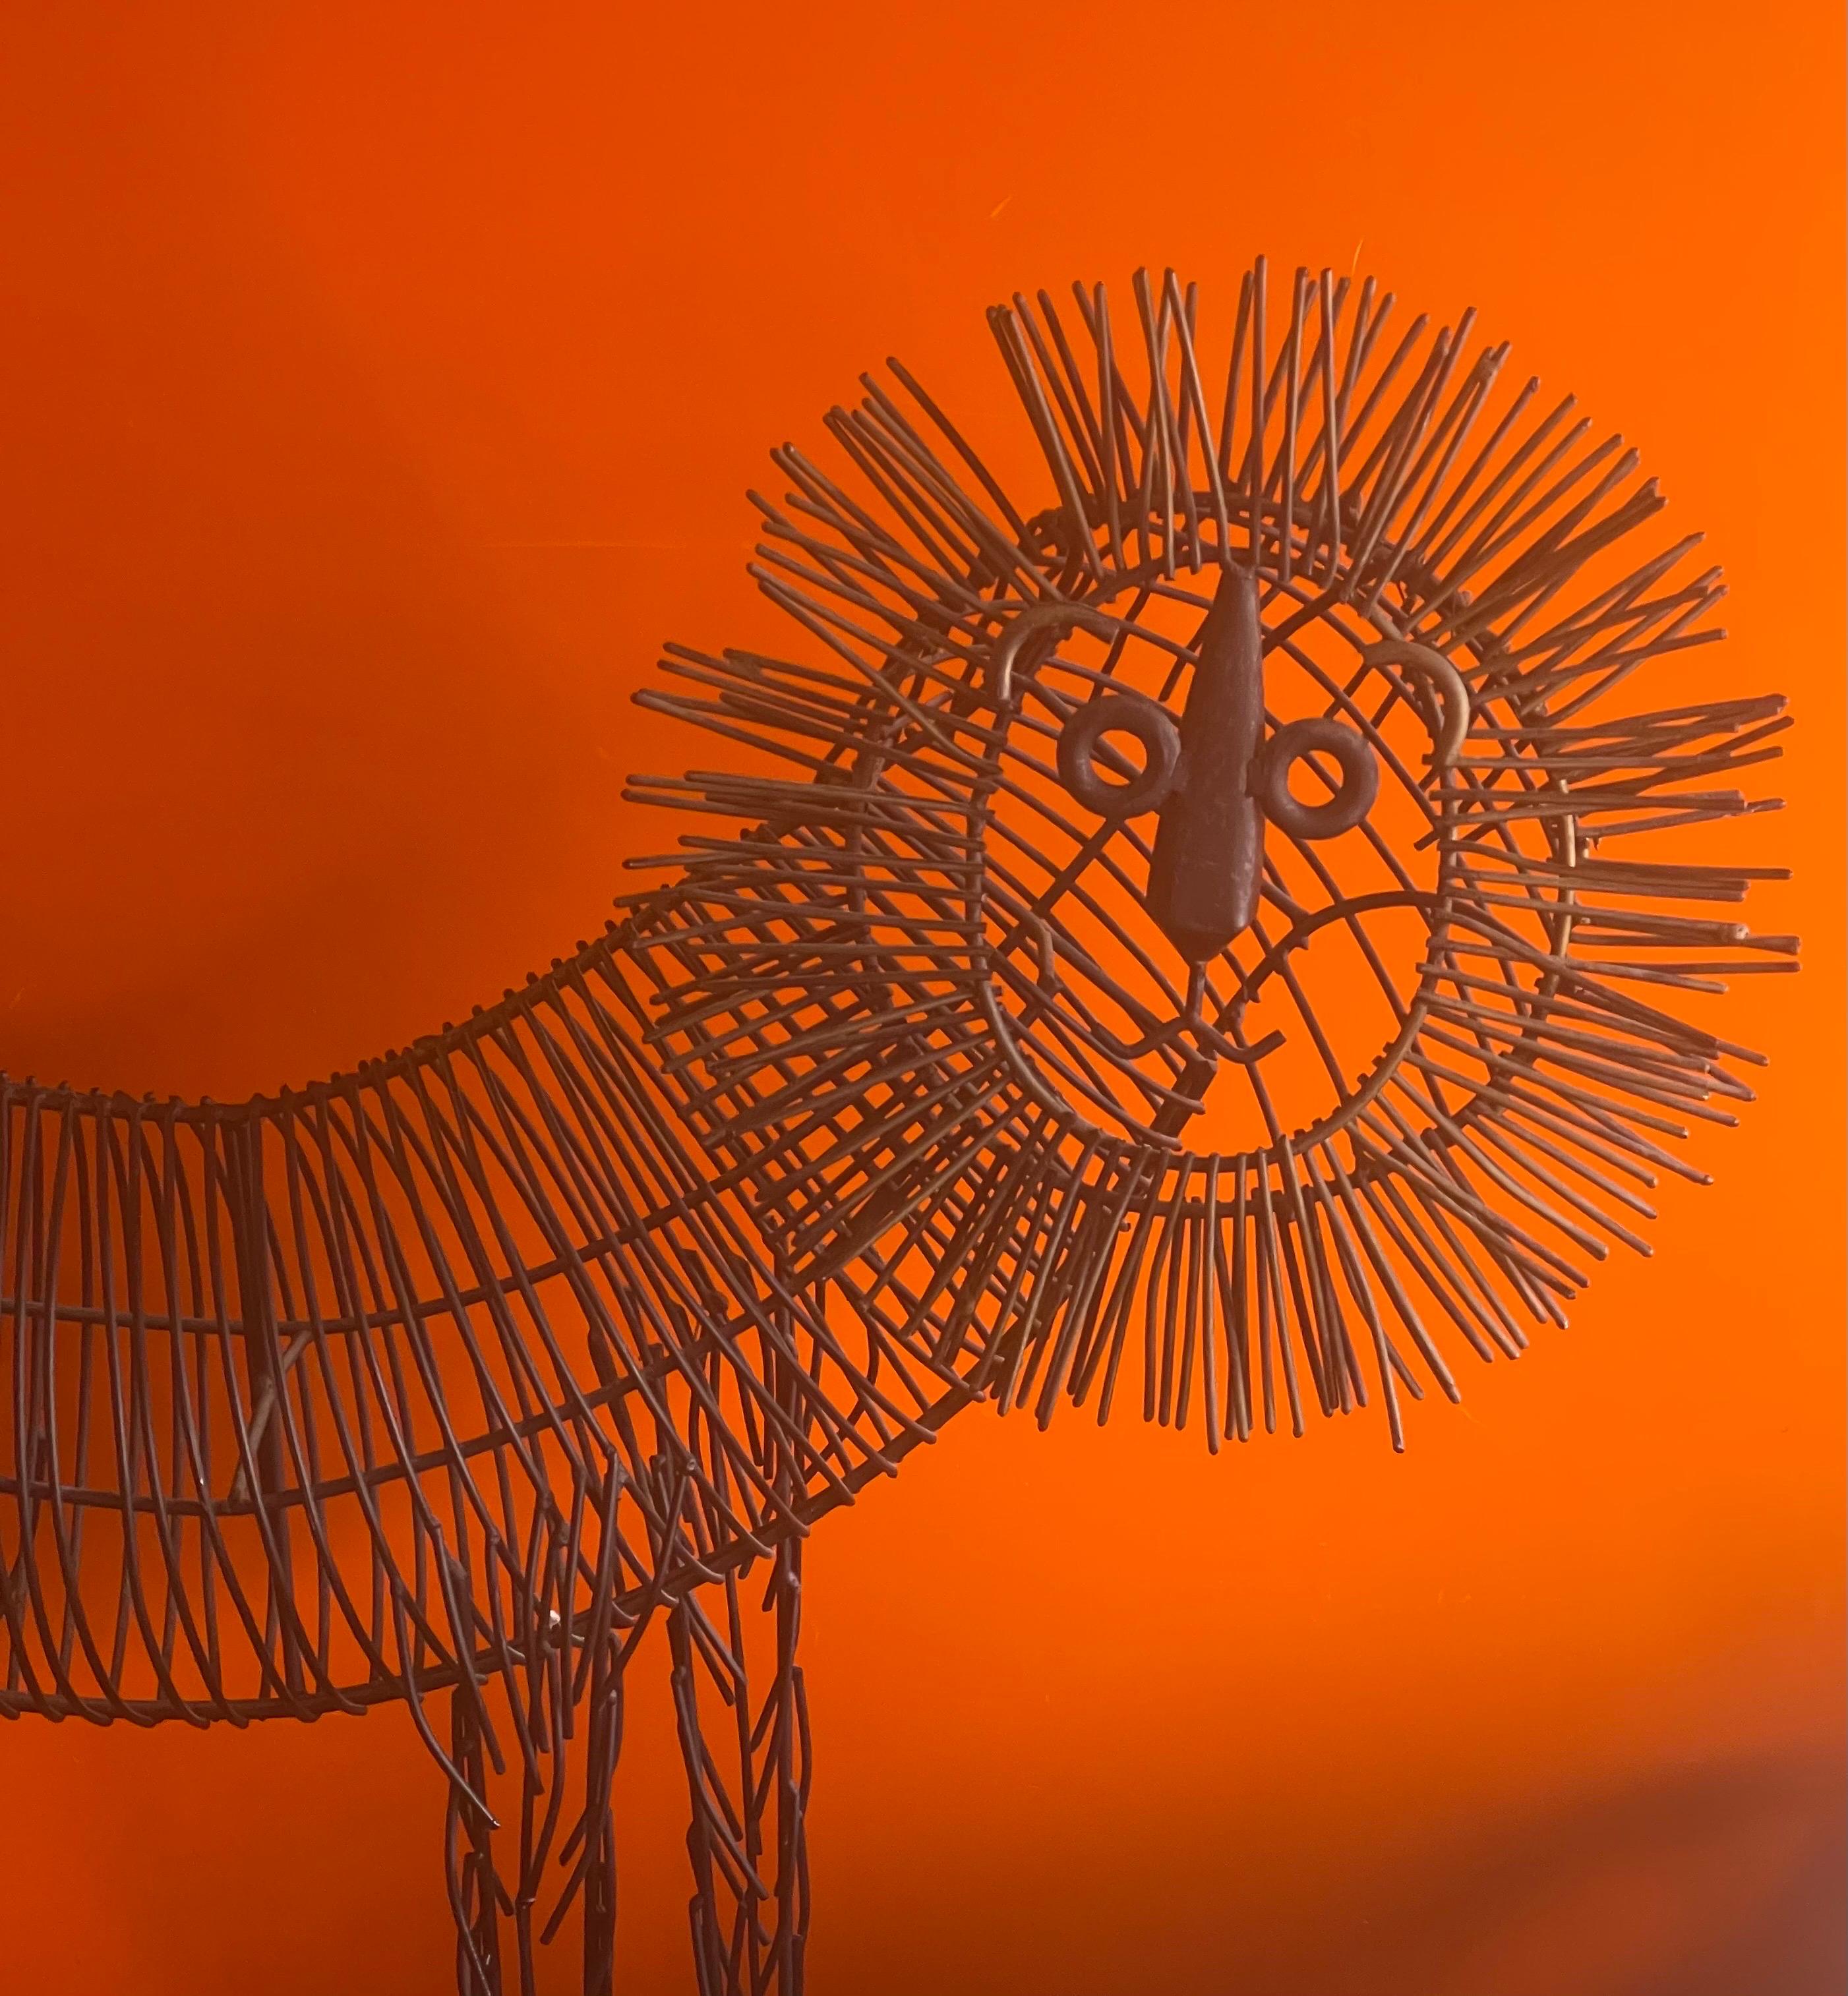 lion wire sculpture